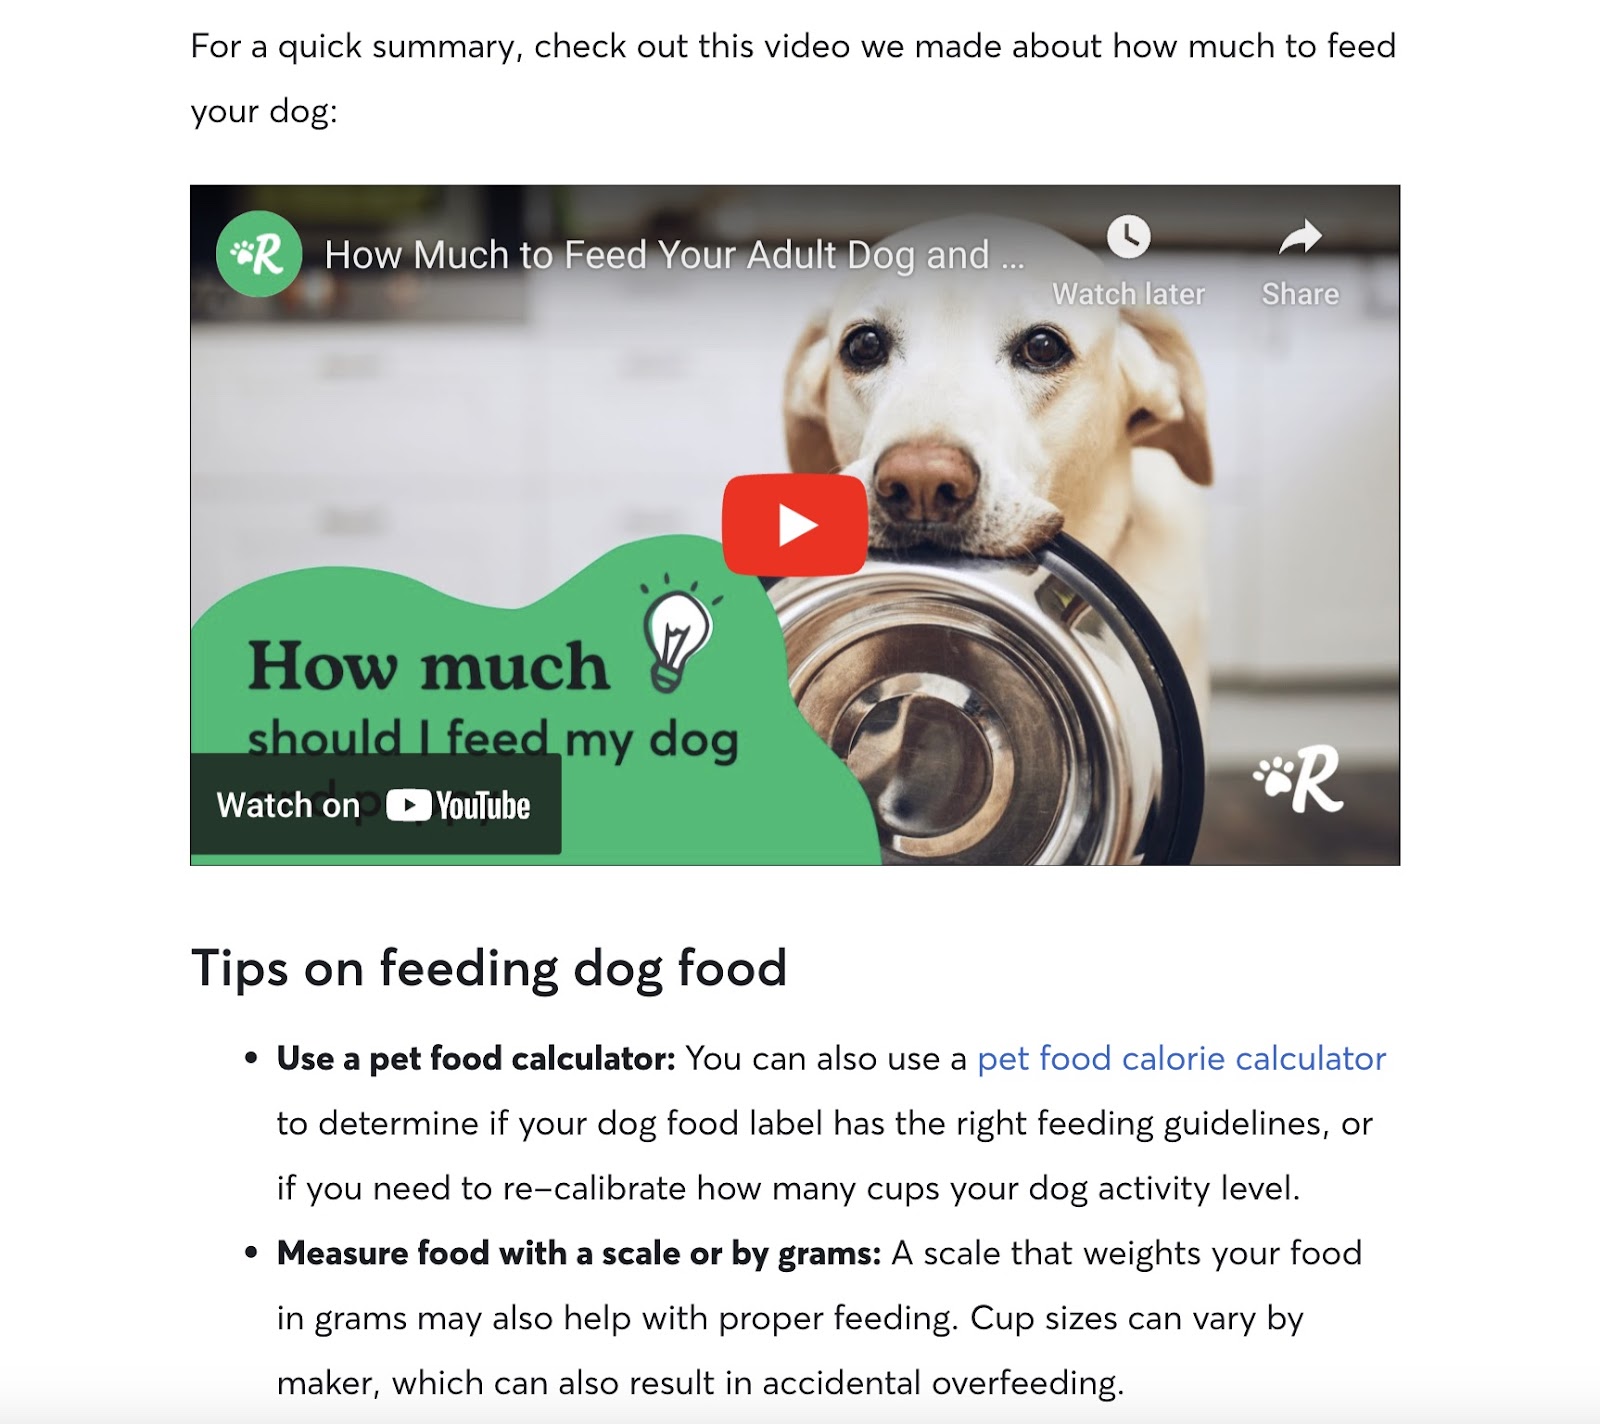 Vidéo de Rover sur le guide d'alimentation des chiens, intégrée à l'article